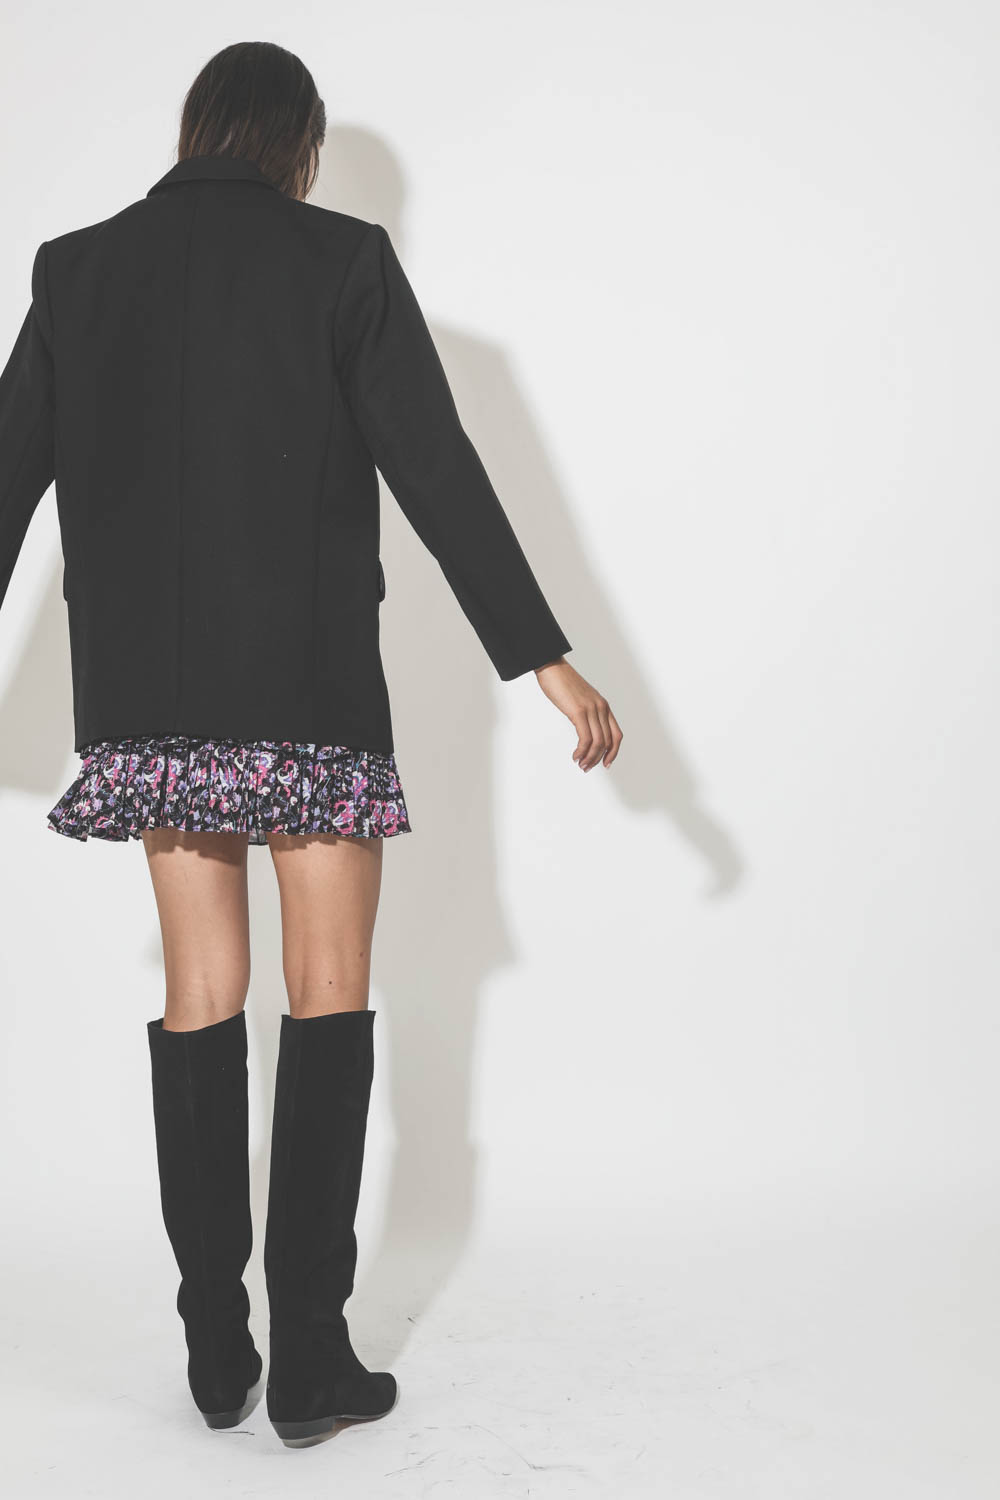 Mini jupe à volant imprimée fleurs noires et roses Naomi Marant Etoile. Porté avec des bottes en daim noir.